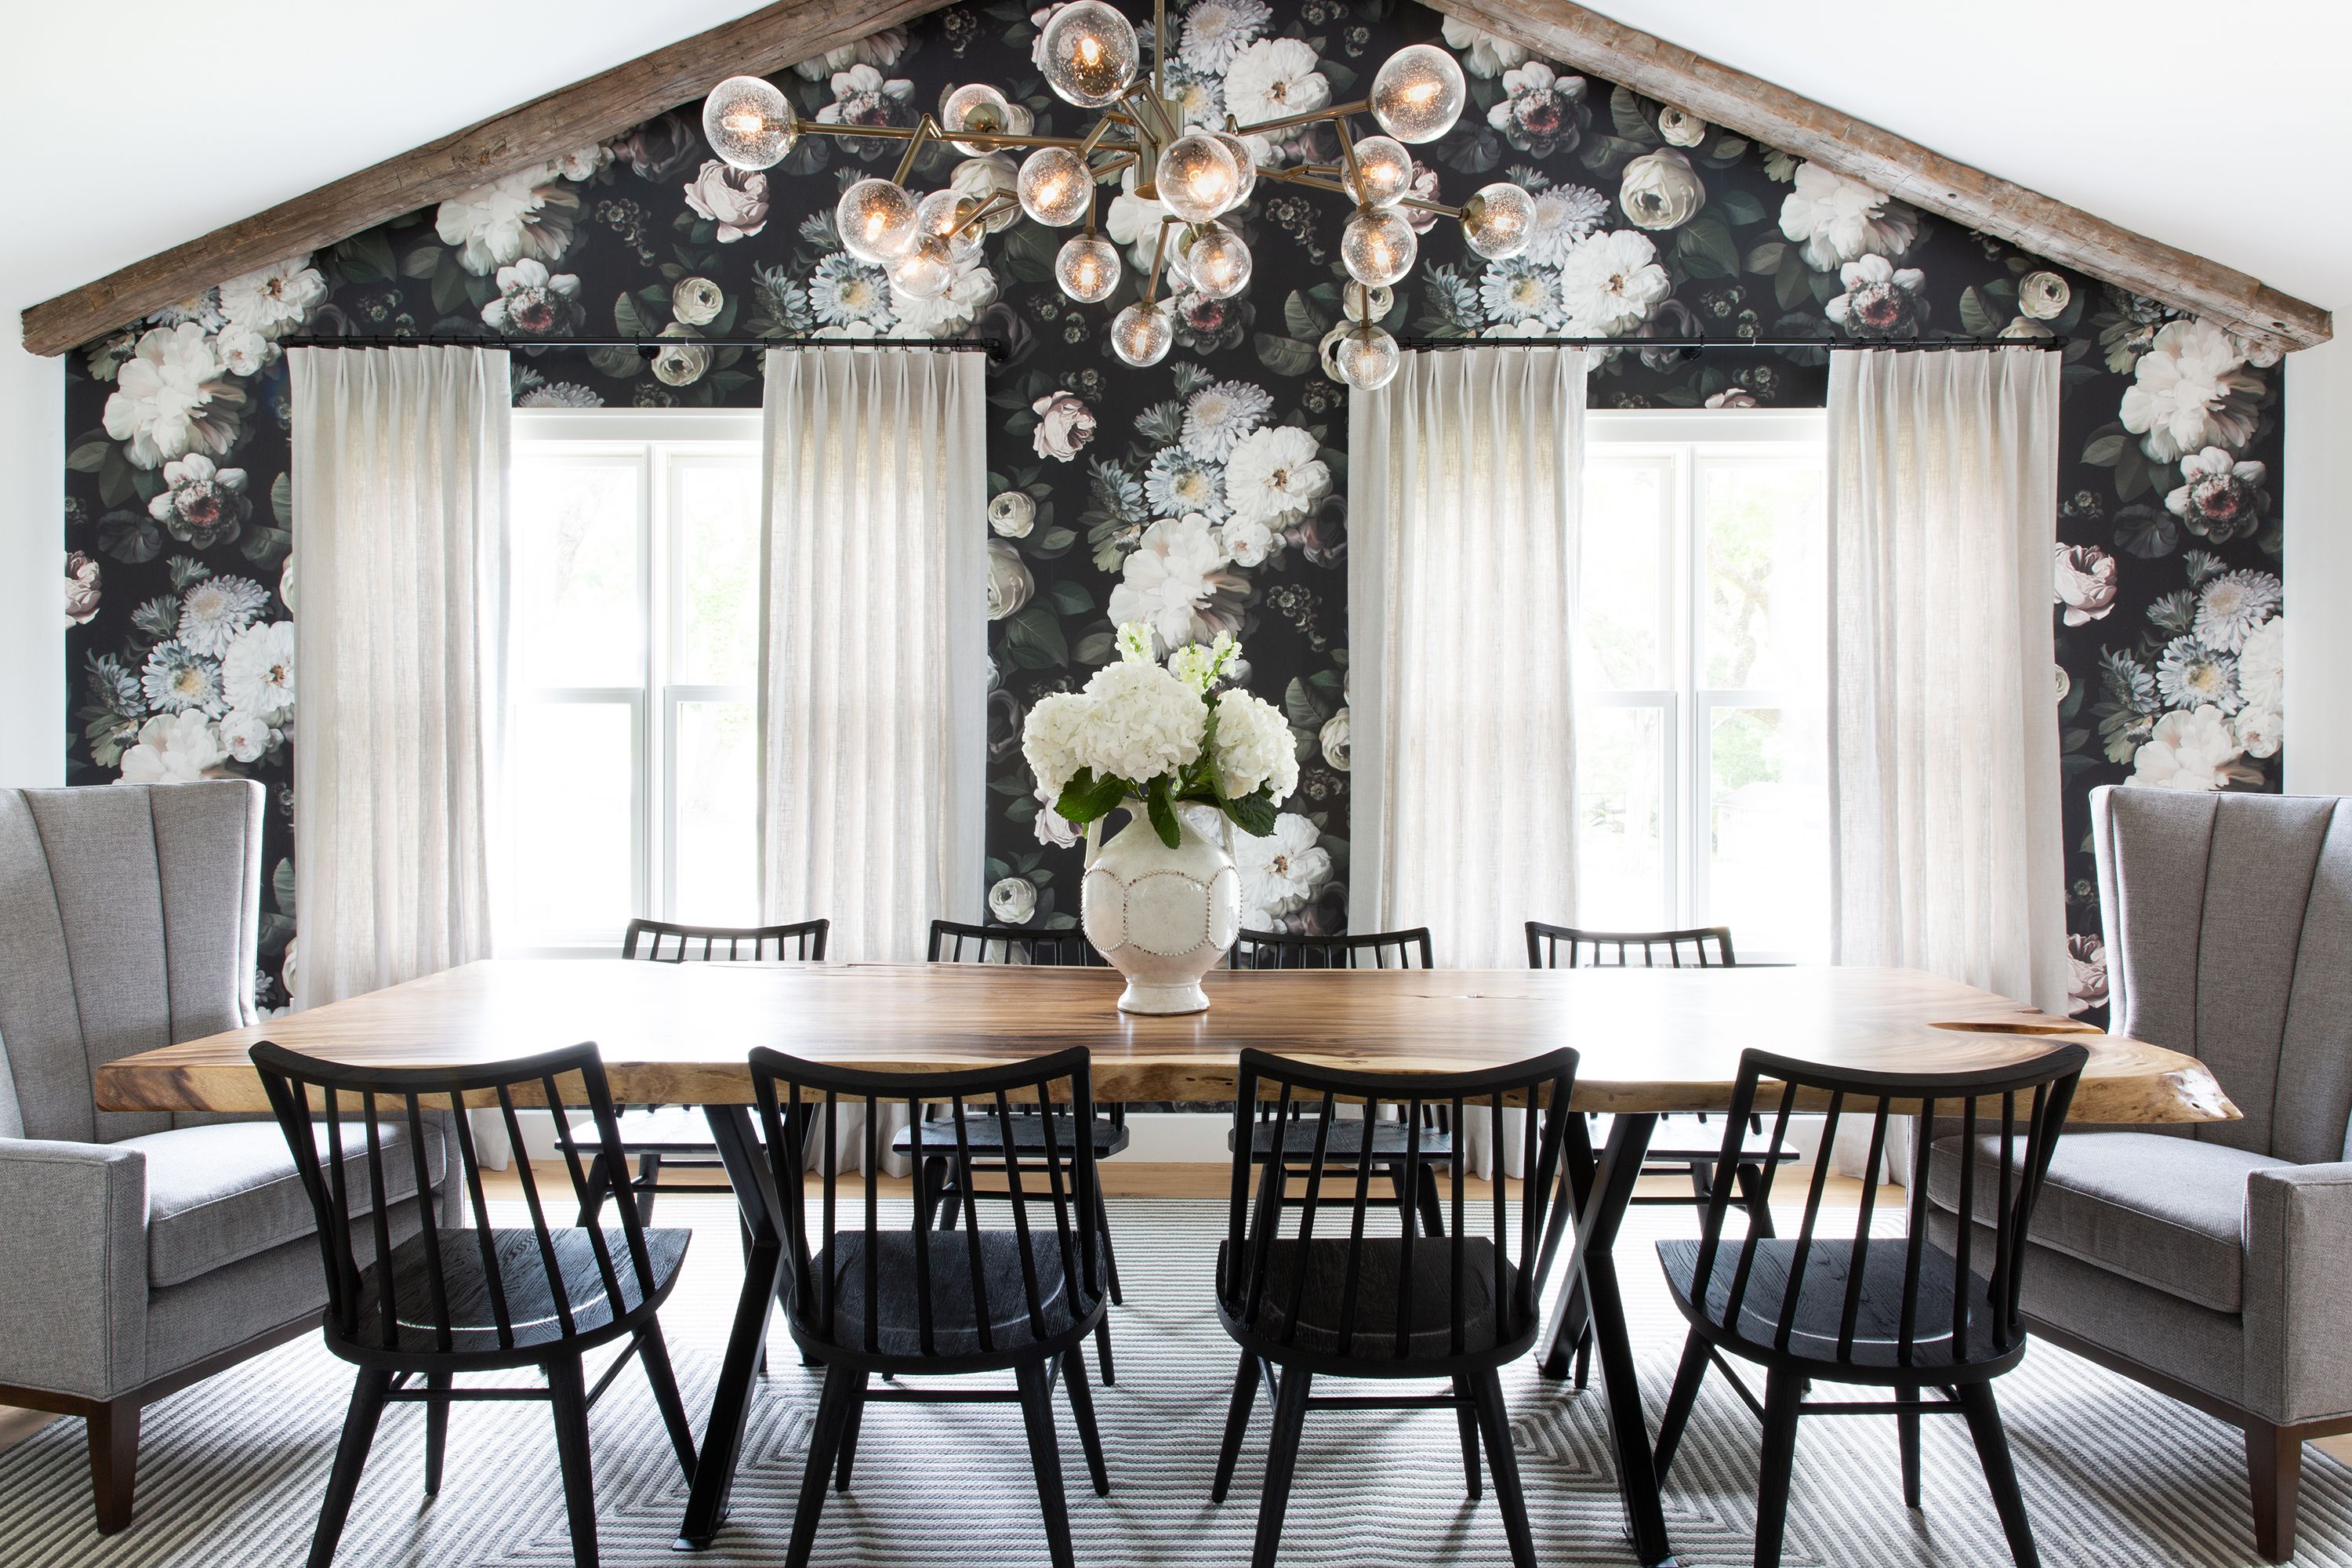 wallpaper in dining room ideas